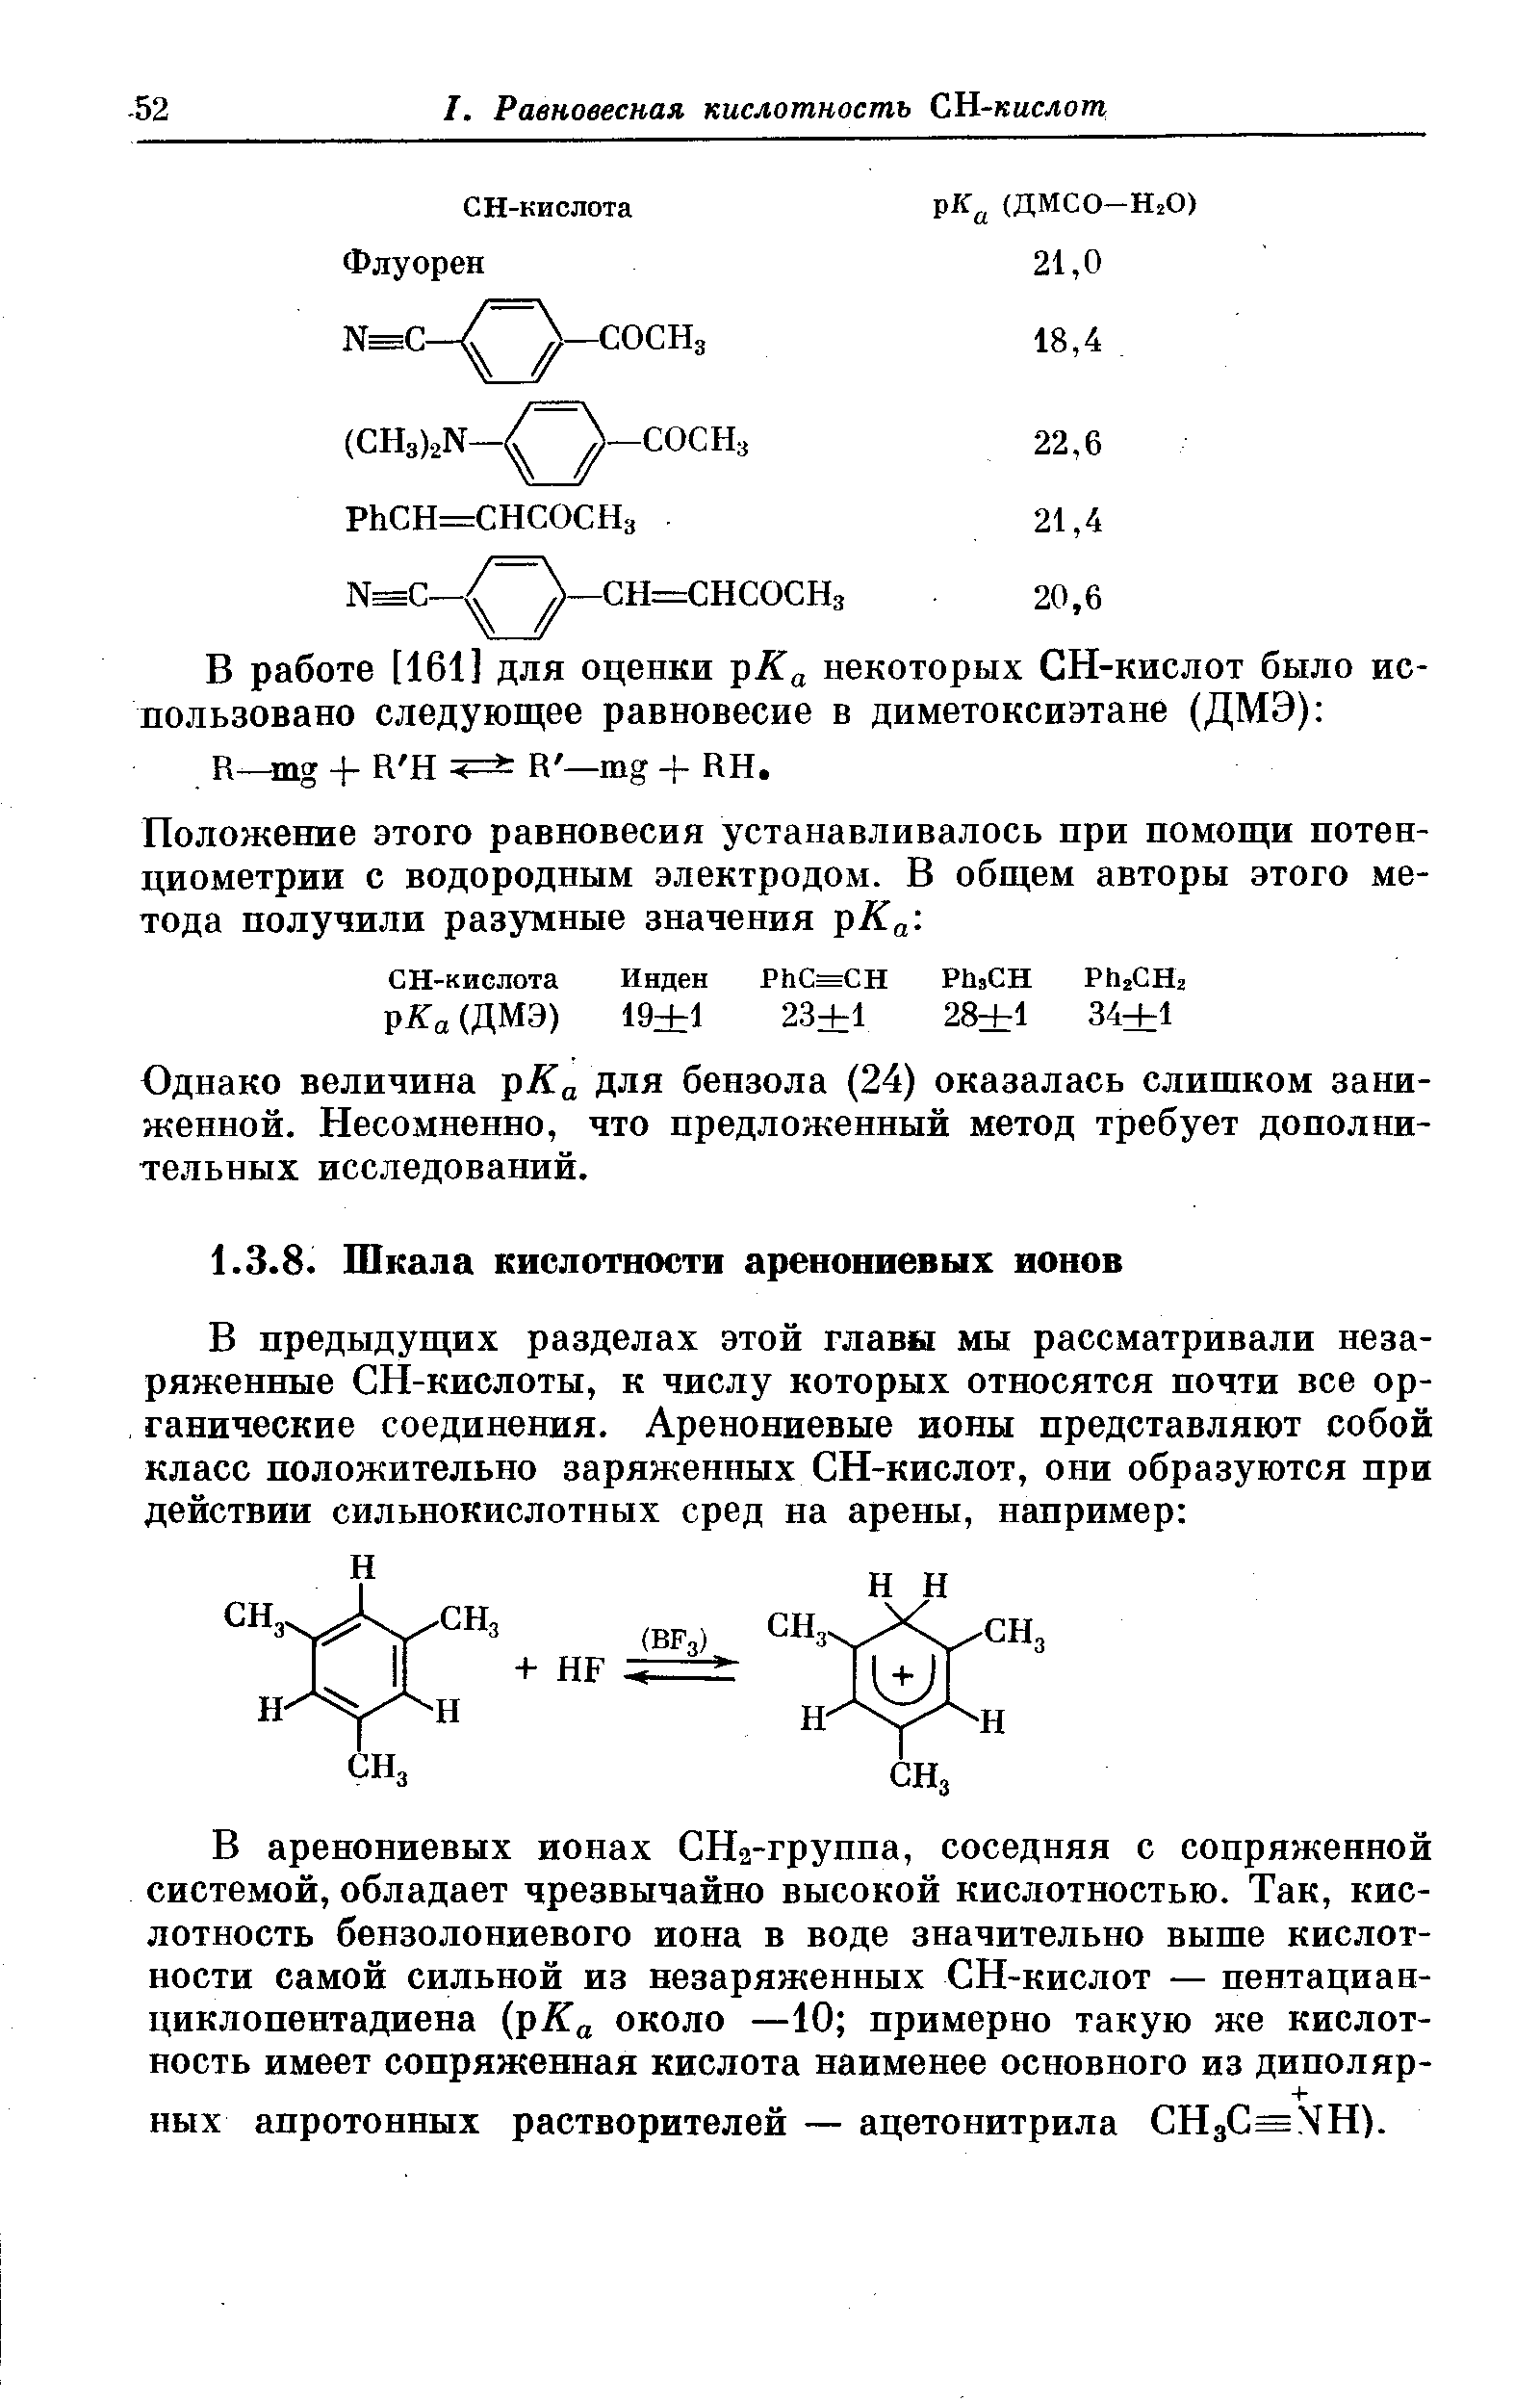 В работе [161] для оценки рКа некоторых СН-кислот было использовано следующее равновесие в диметоксиэтане (ДМЭ) в—тз + К Н 4=3 R mg + НН.